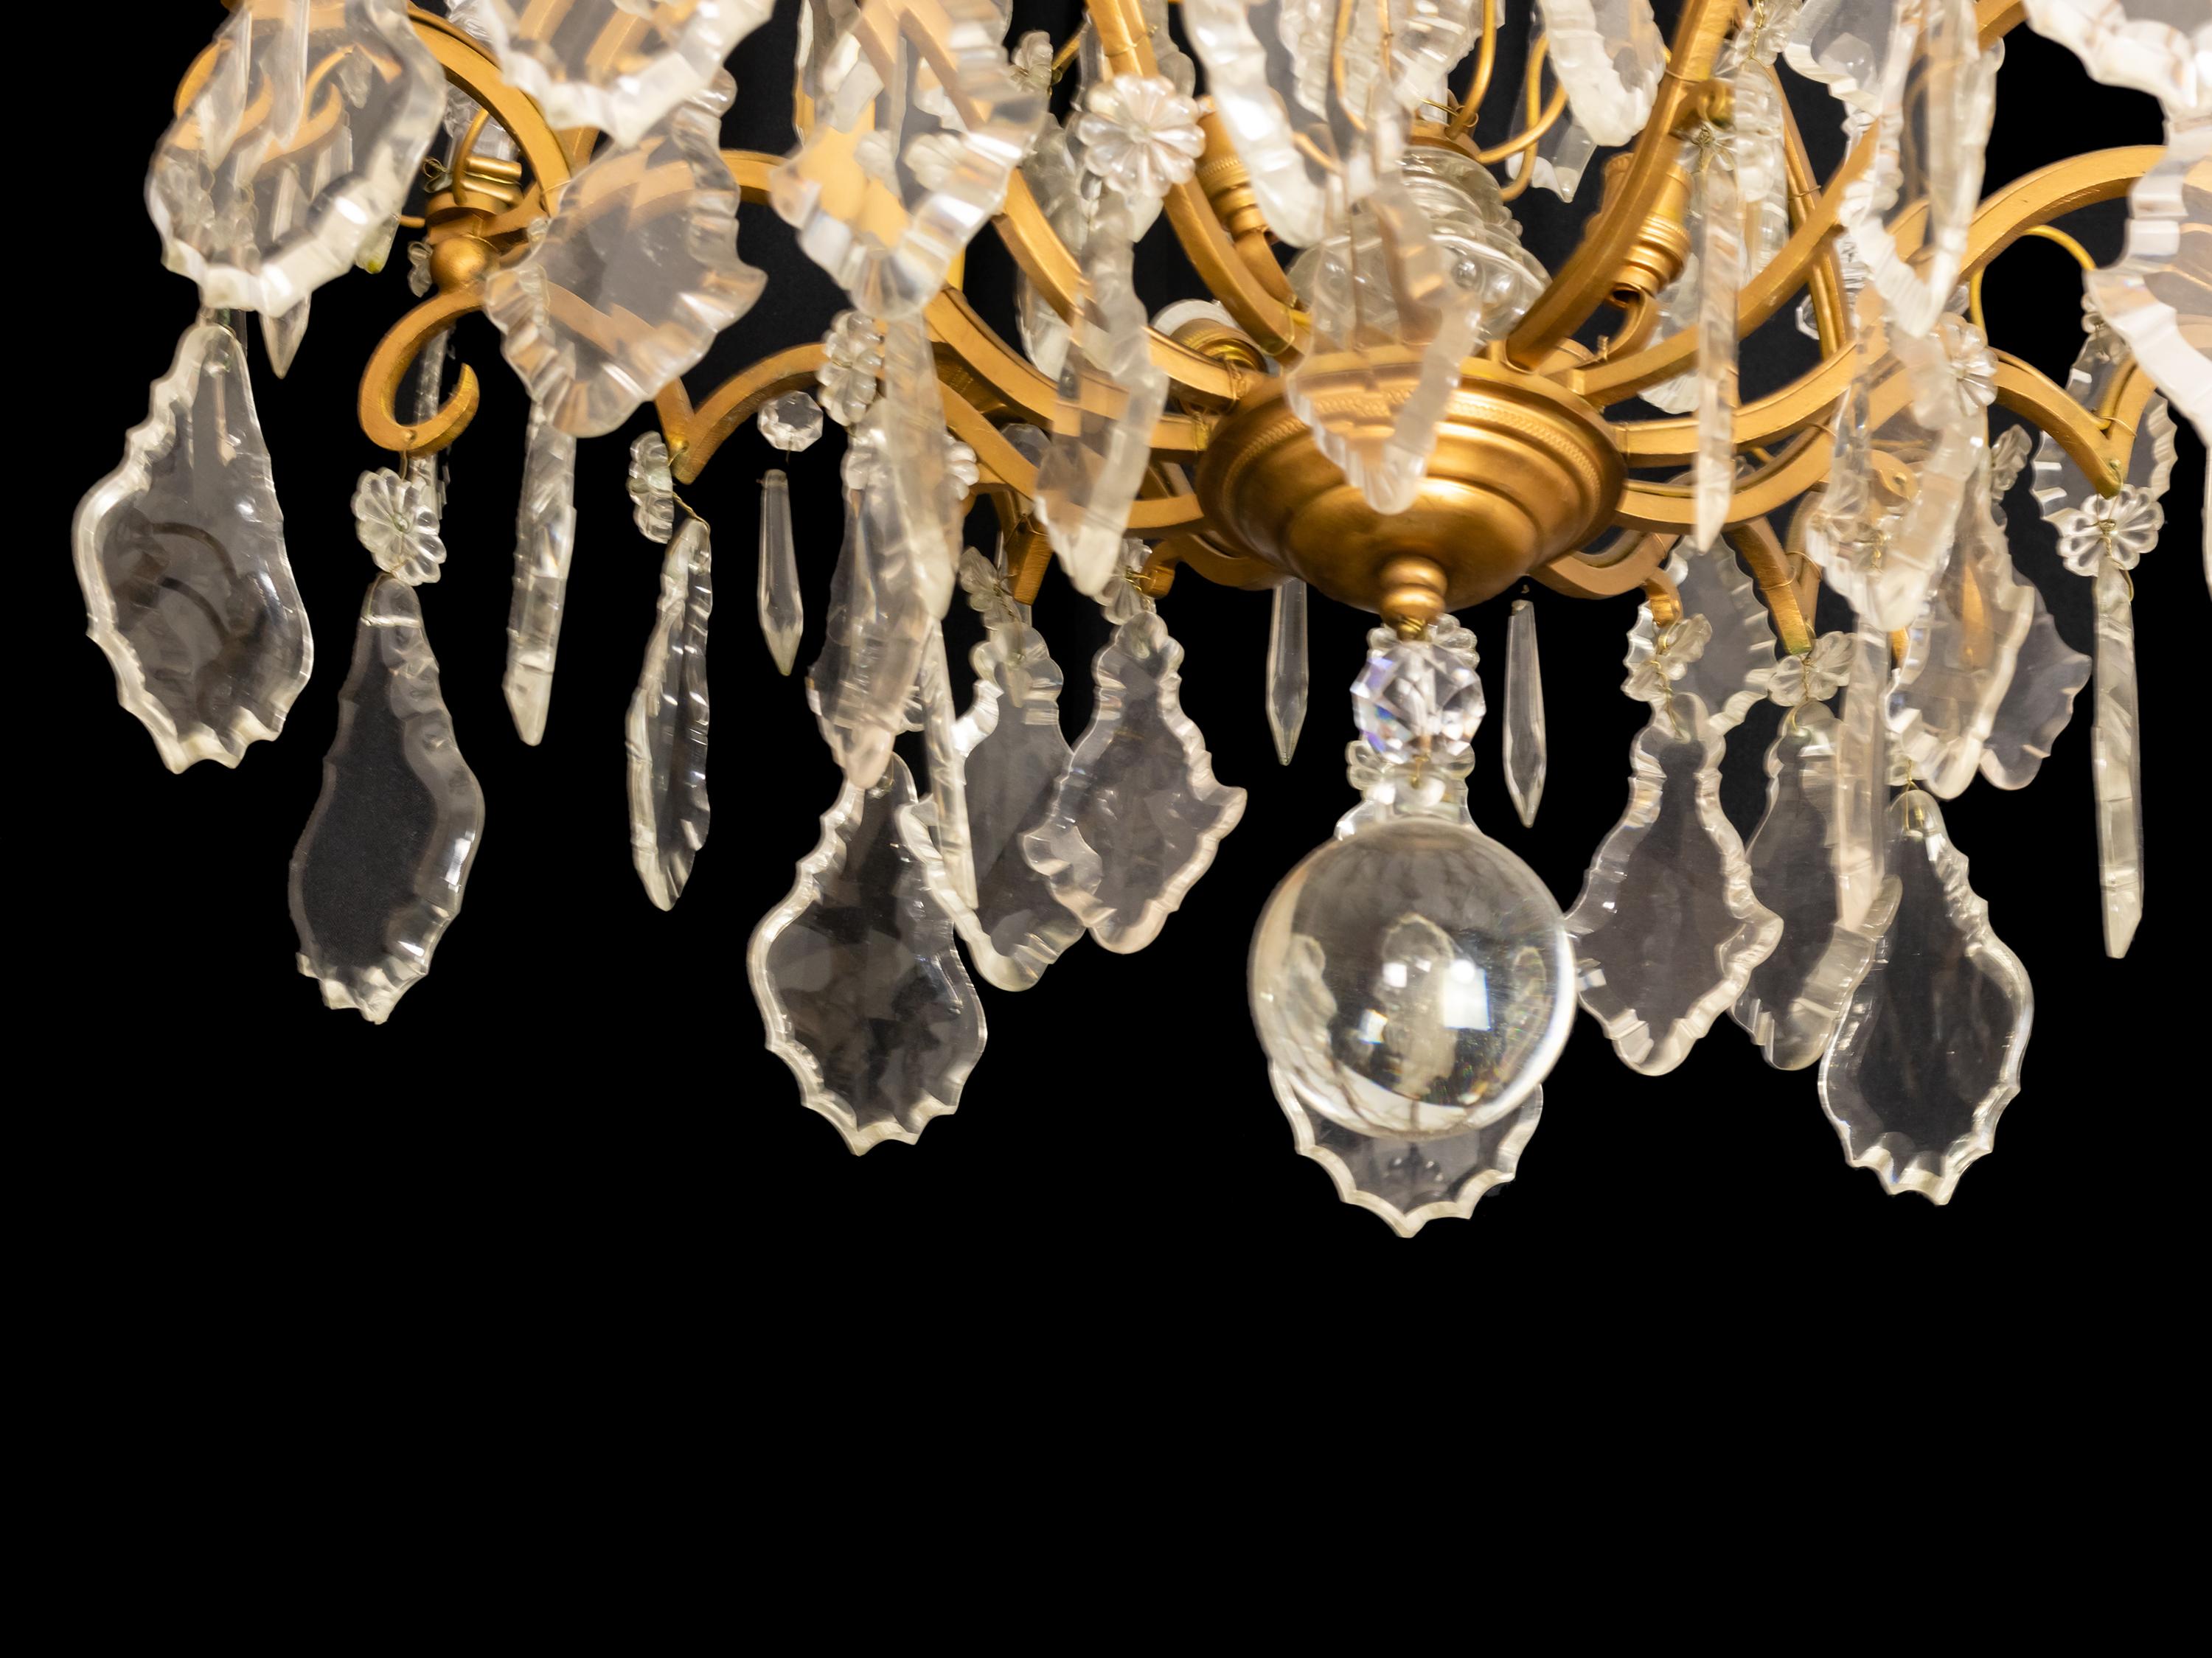 Ein klassischer Kronleuchter im Stil Louis XV mit 8 Armen und 12 Lampen (4 zentrale).
Der vergoldete Metallrahmen ist reichlich mit verschieden großen Kristallplaketten bestückt.

Ursprünglich mit Kerzen beleuchtet, jetzt vollständig